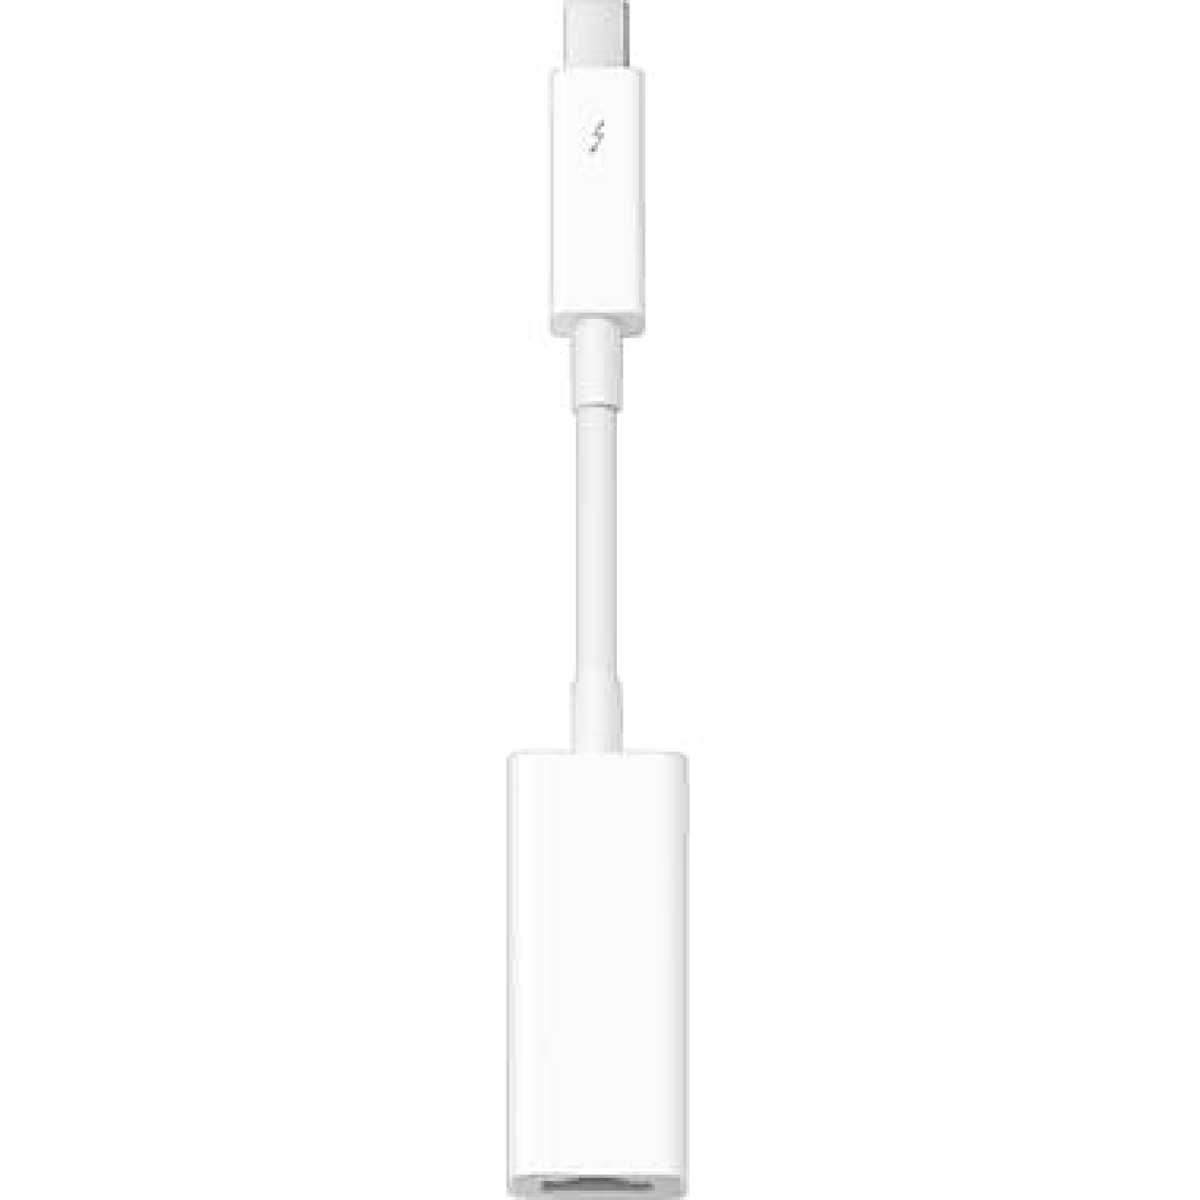 Apple Adaptateur USB-C vers mini-jack 3,5 mm Blanc - Accessoires